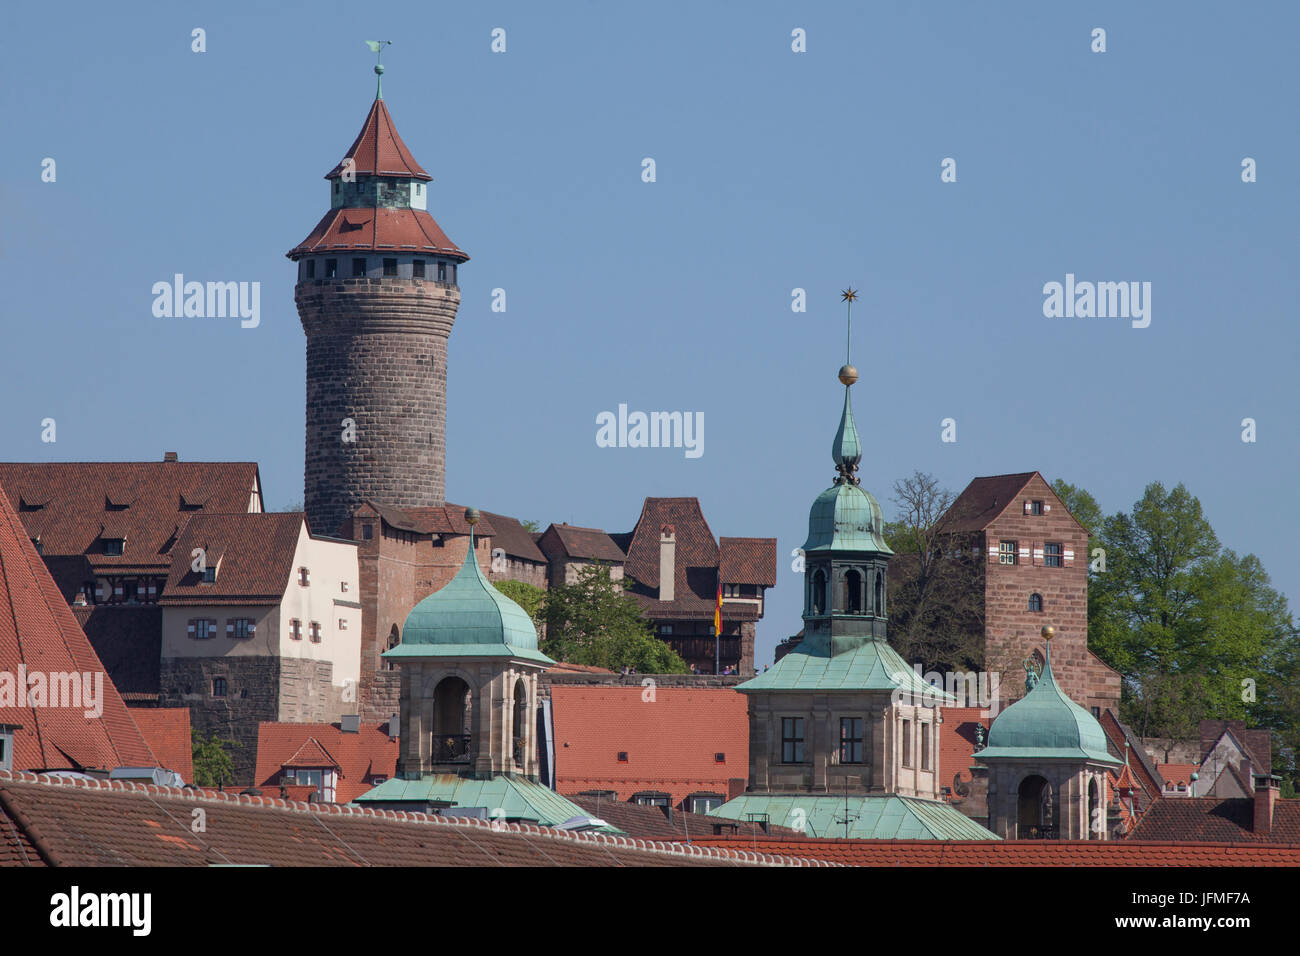 Kaiserburg , Altstadt, Nürnberg, Franken, Bayern, Deutschland, Europa    I  Castle 'Kaiserburg', Old Town, Nürnberg, Bavaria, Germany, Europe Stock Photo